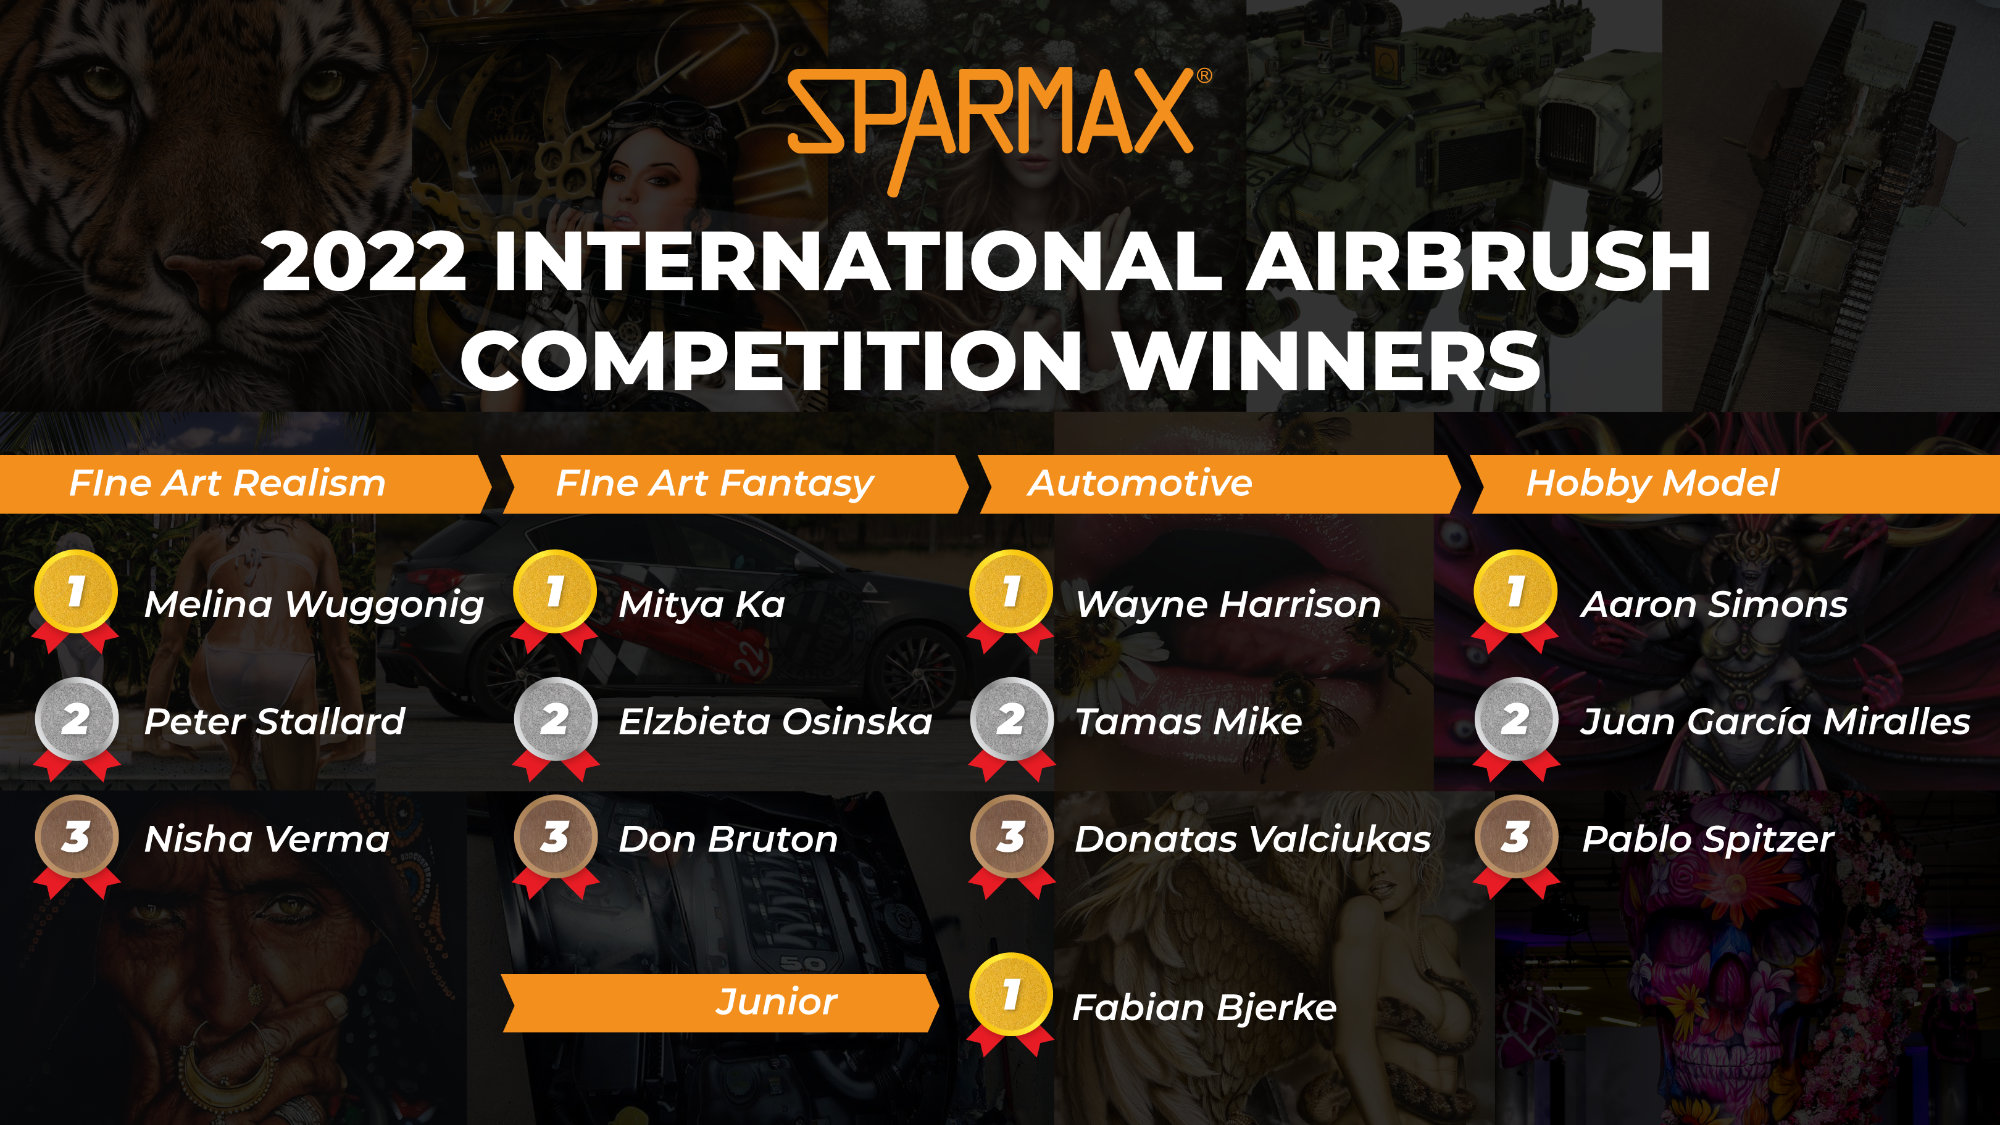 Die Gewinner des Sparmax Airbrush-Wettbewerbs 2022